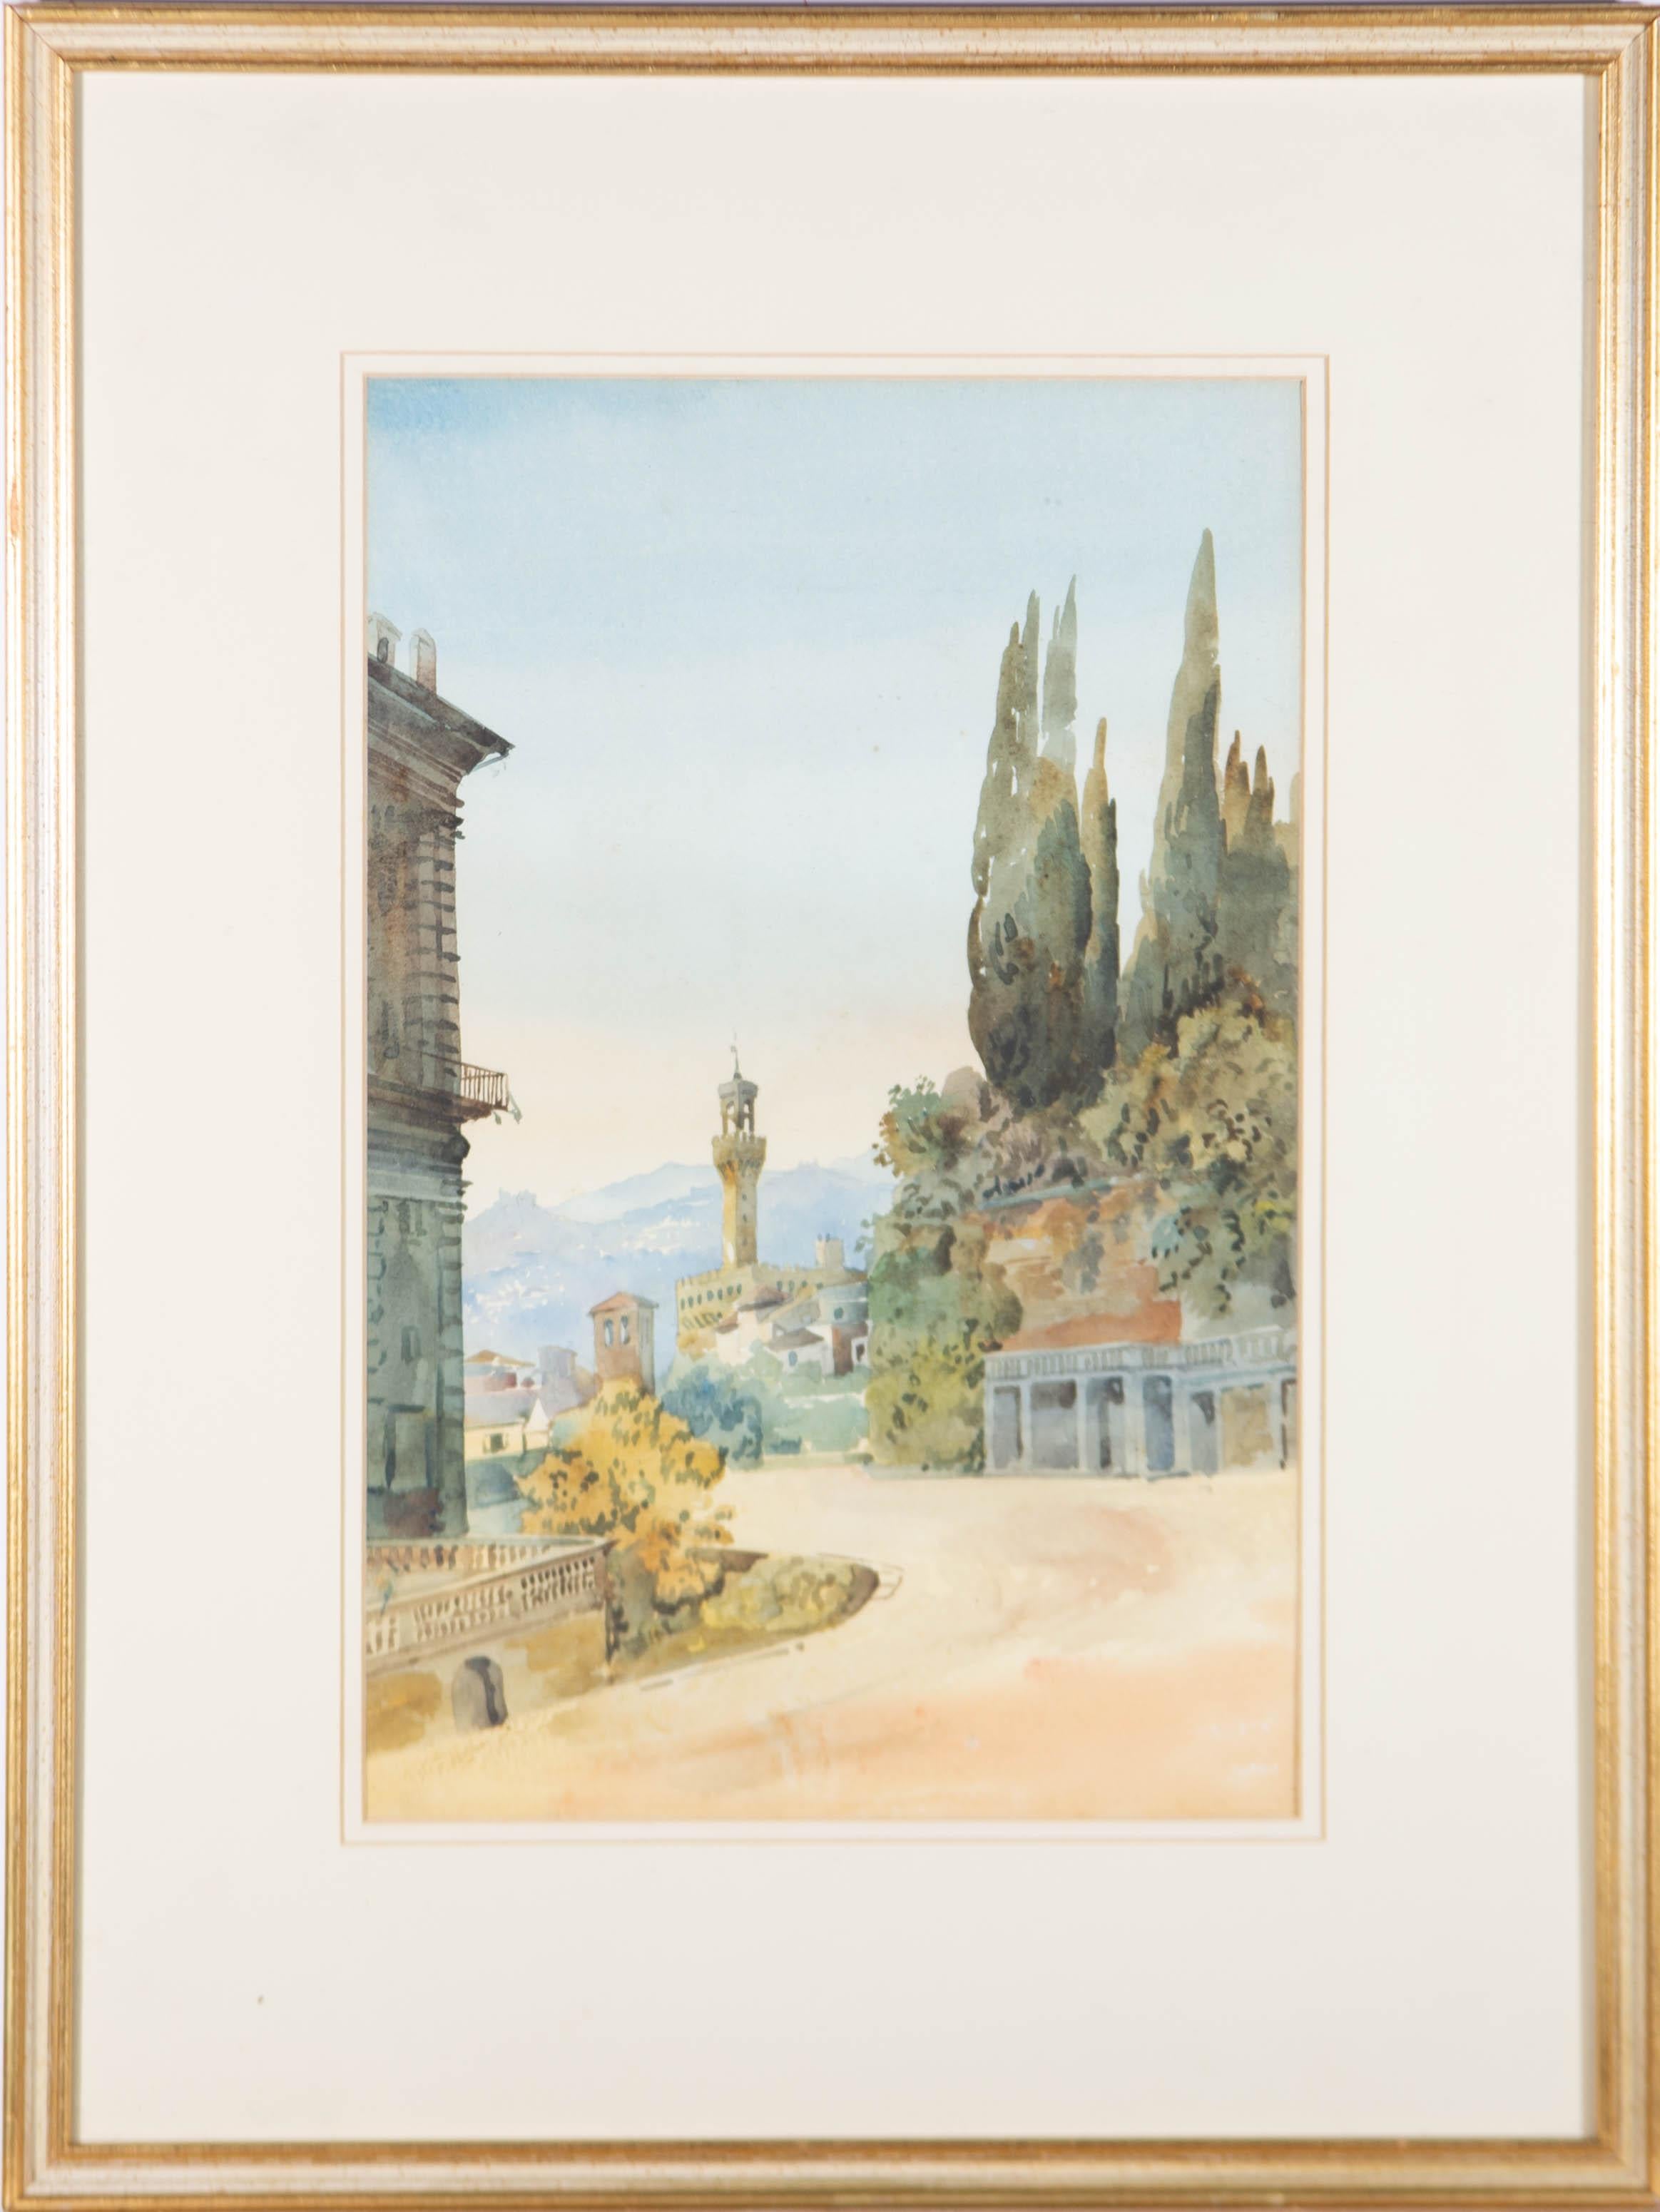 Unknown Landscape Art - Framed Mid 20th Century Watercolour - Plazzo Vecchio